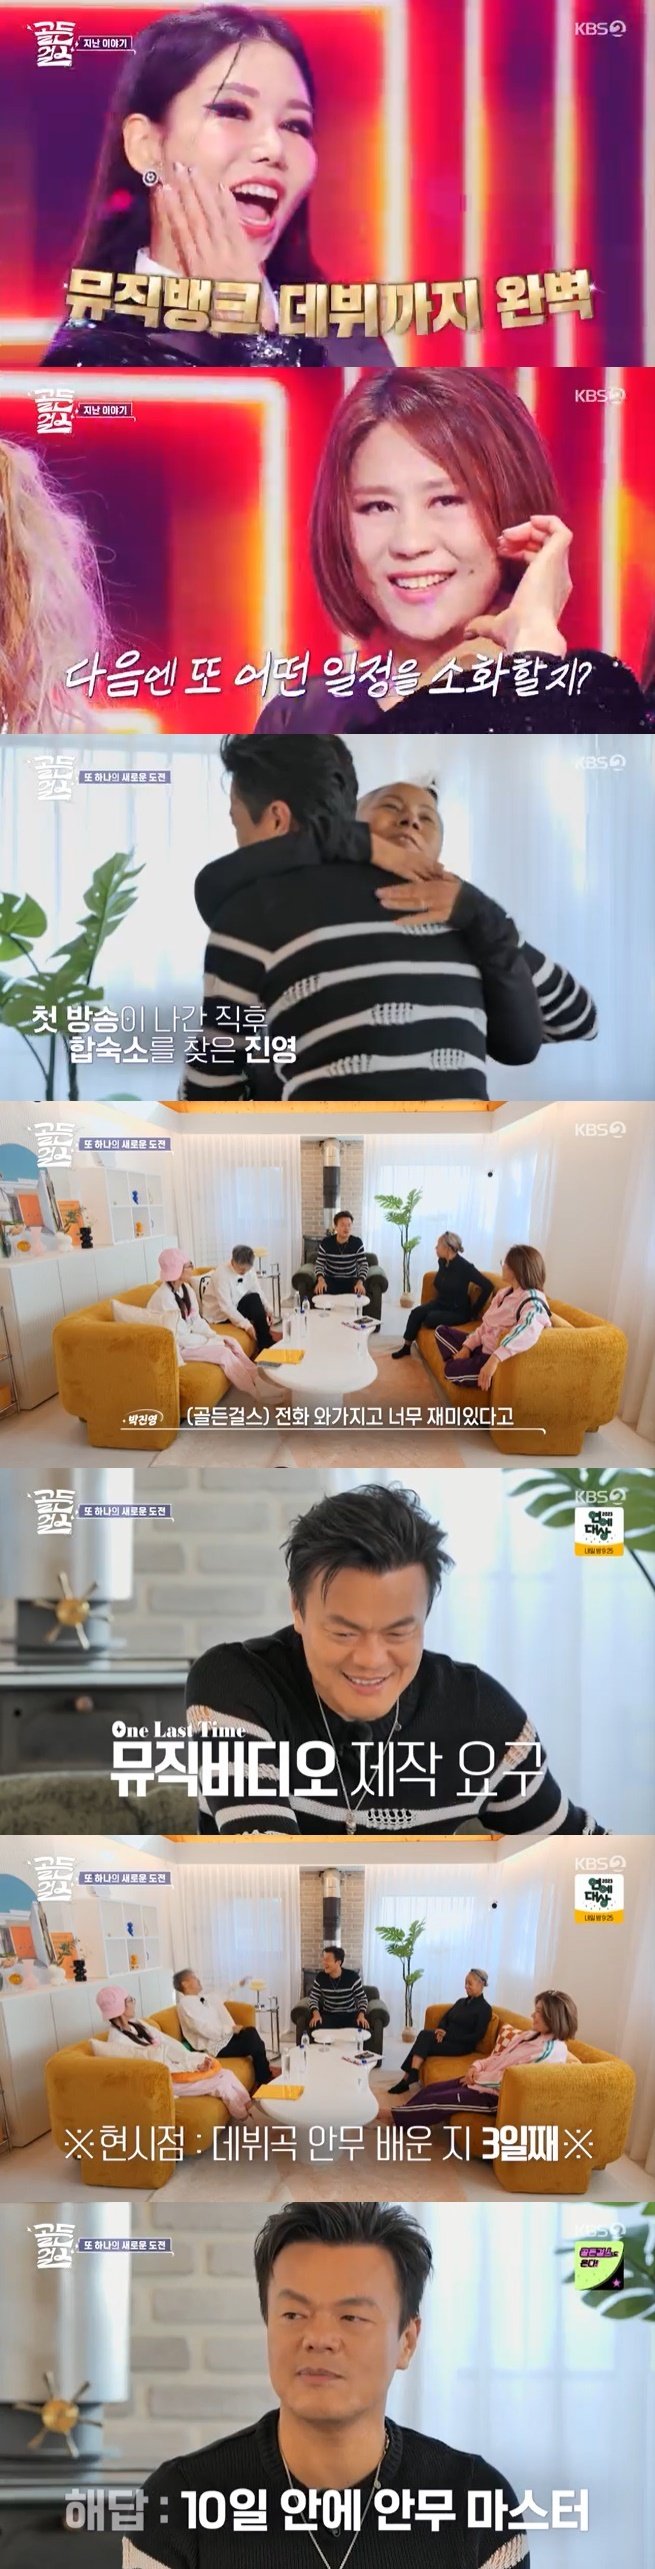 박진영 "'골든걸스' 재밌어 난리…방송국에 MV 제작 요구했다" [RE:TV]